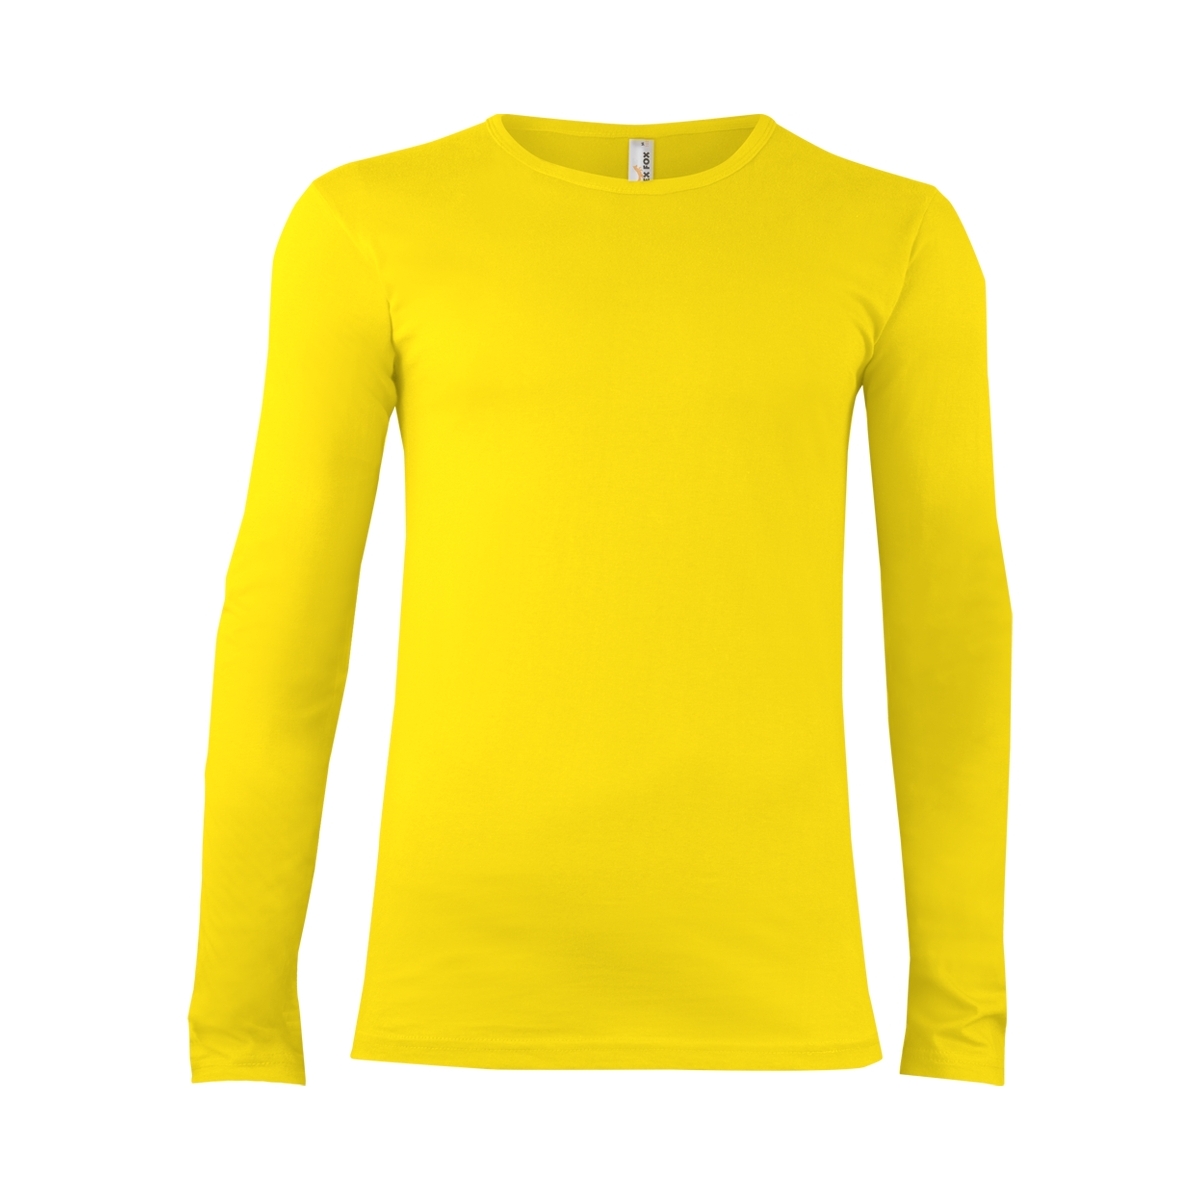 Tričko s dlouhým rukávem Alex Fox Long - žluté, XL